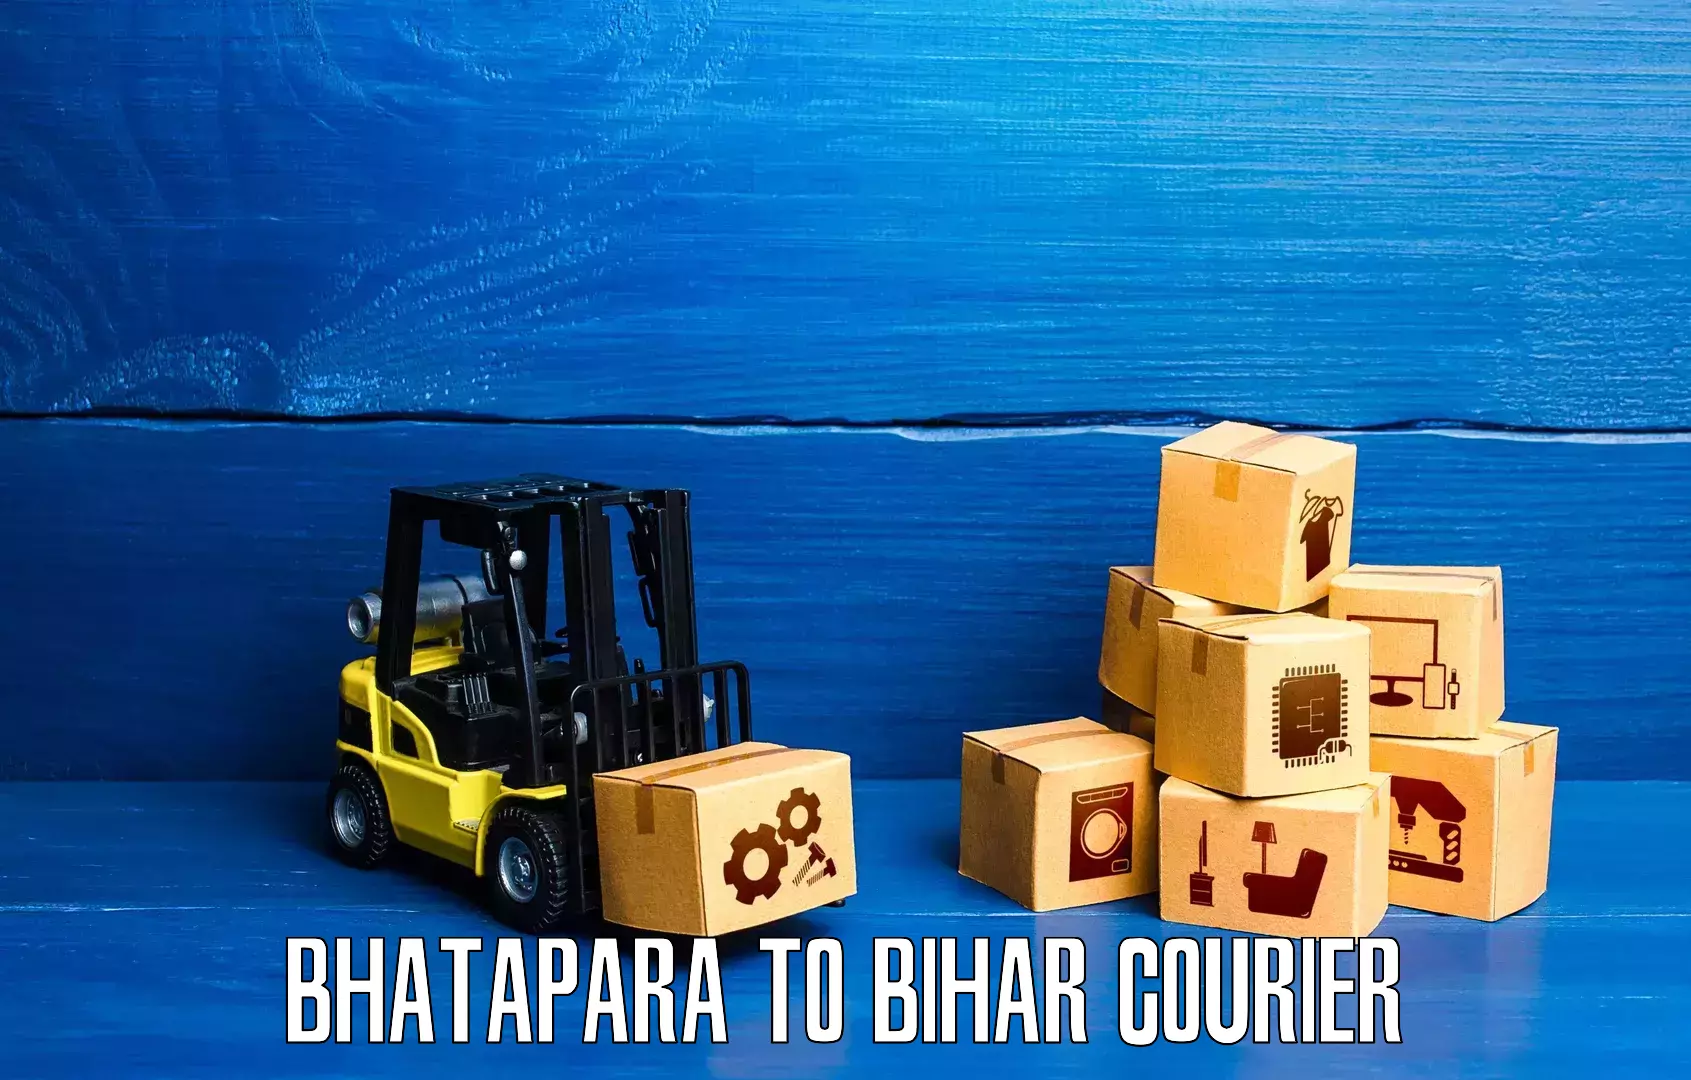 High-capacity parcel service Bhatapara to Khodaganj